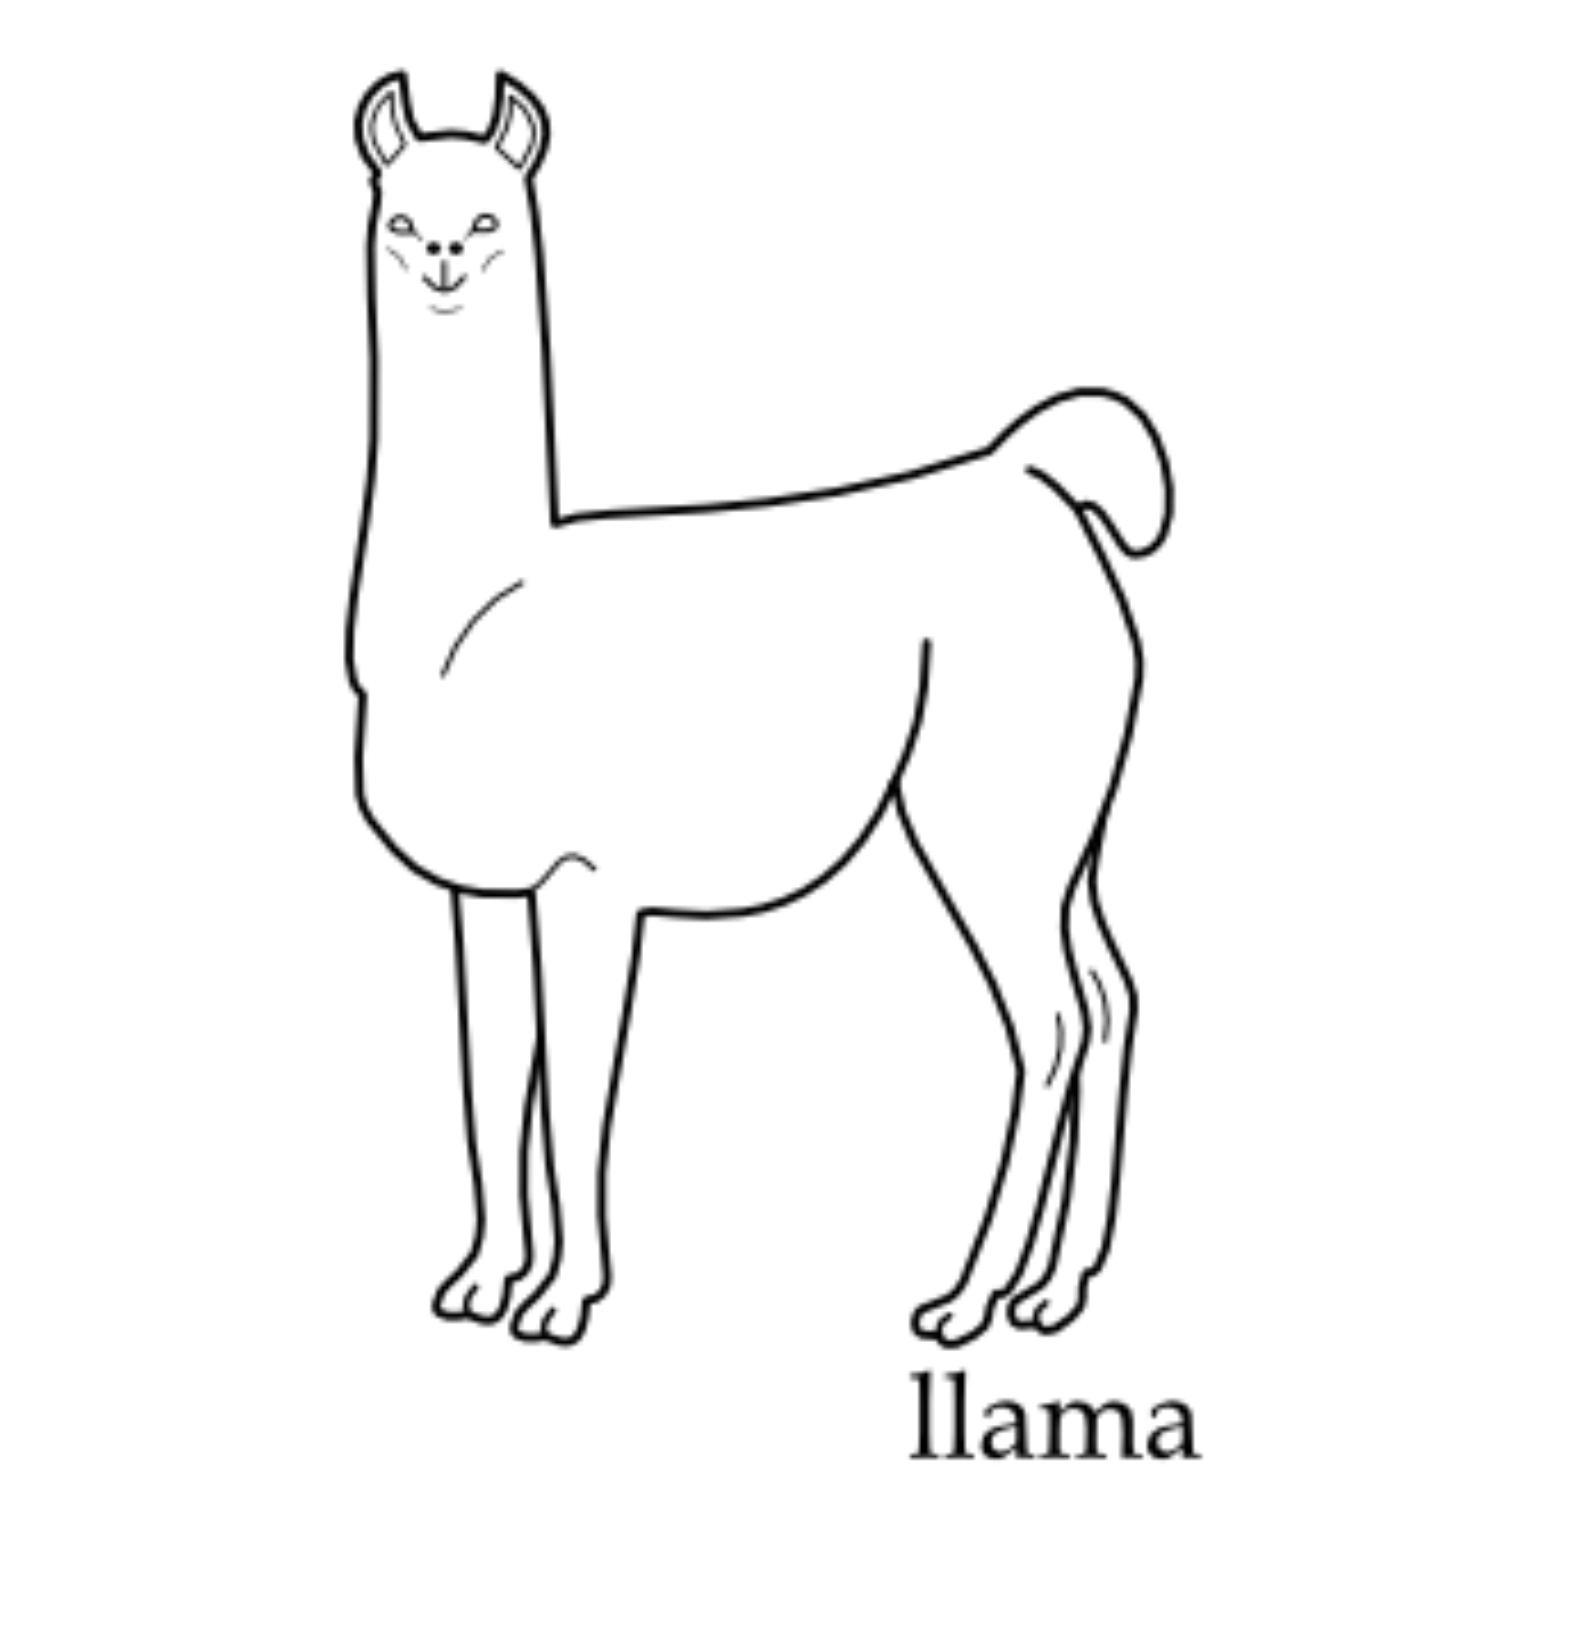 llama llama coloring pages